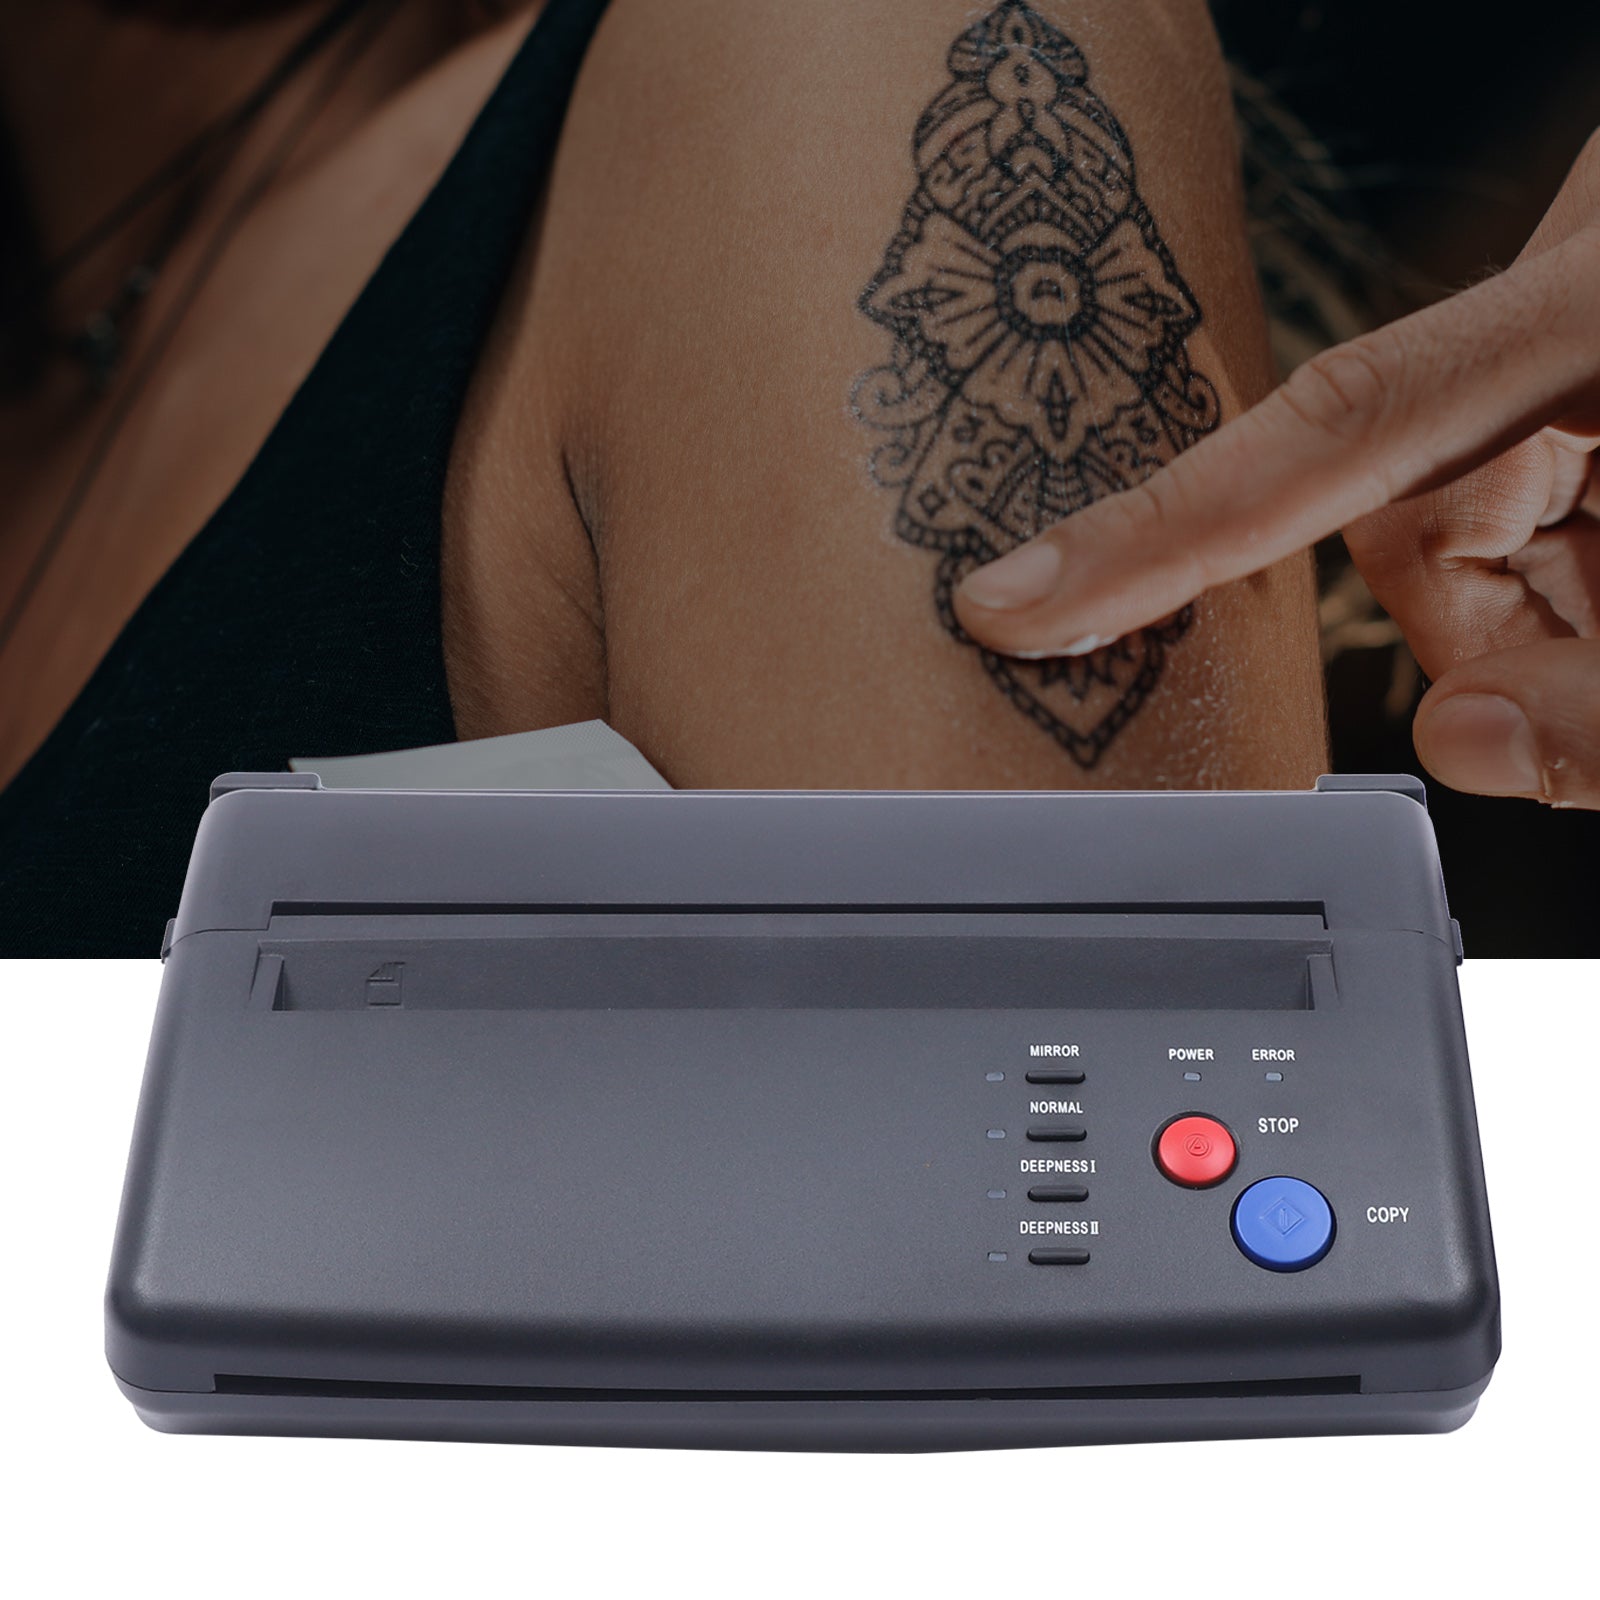 5W Tattoo Transfer Maschine System Schablonen Kopierer Drucker Thermal Stencil, effektive Scanbreite 210 mm